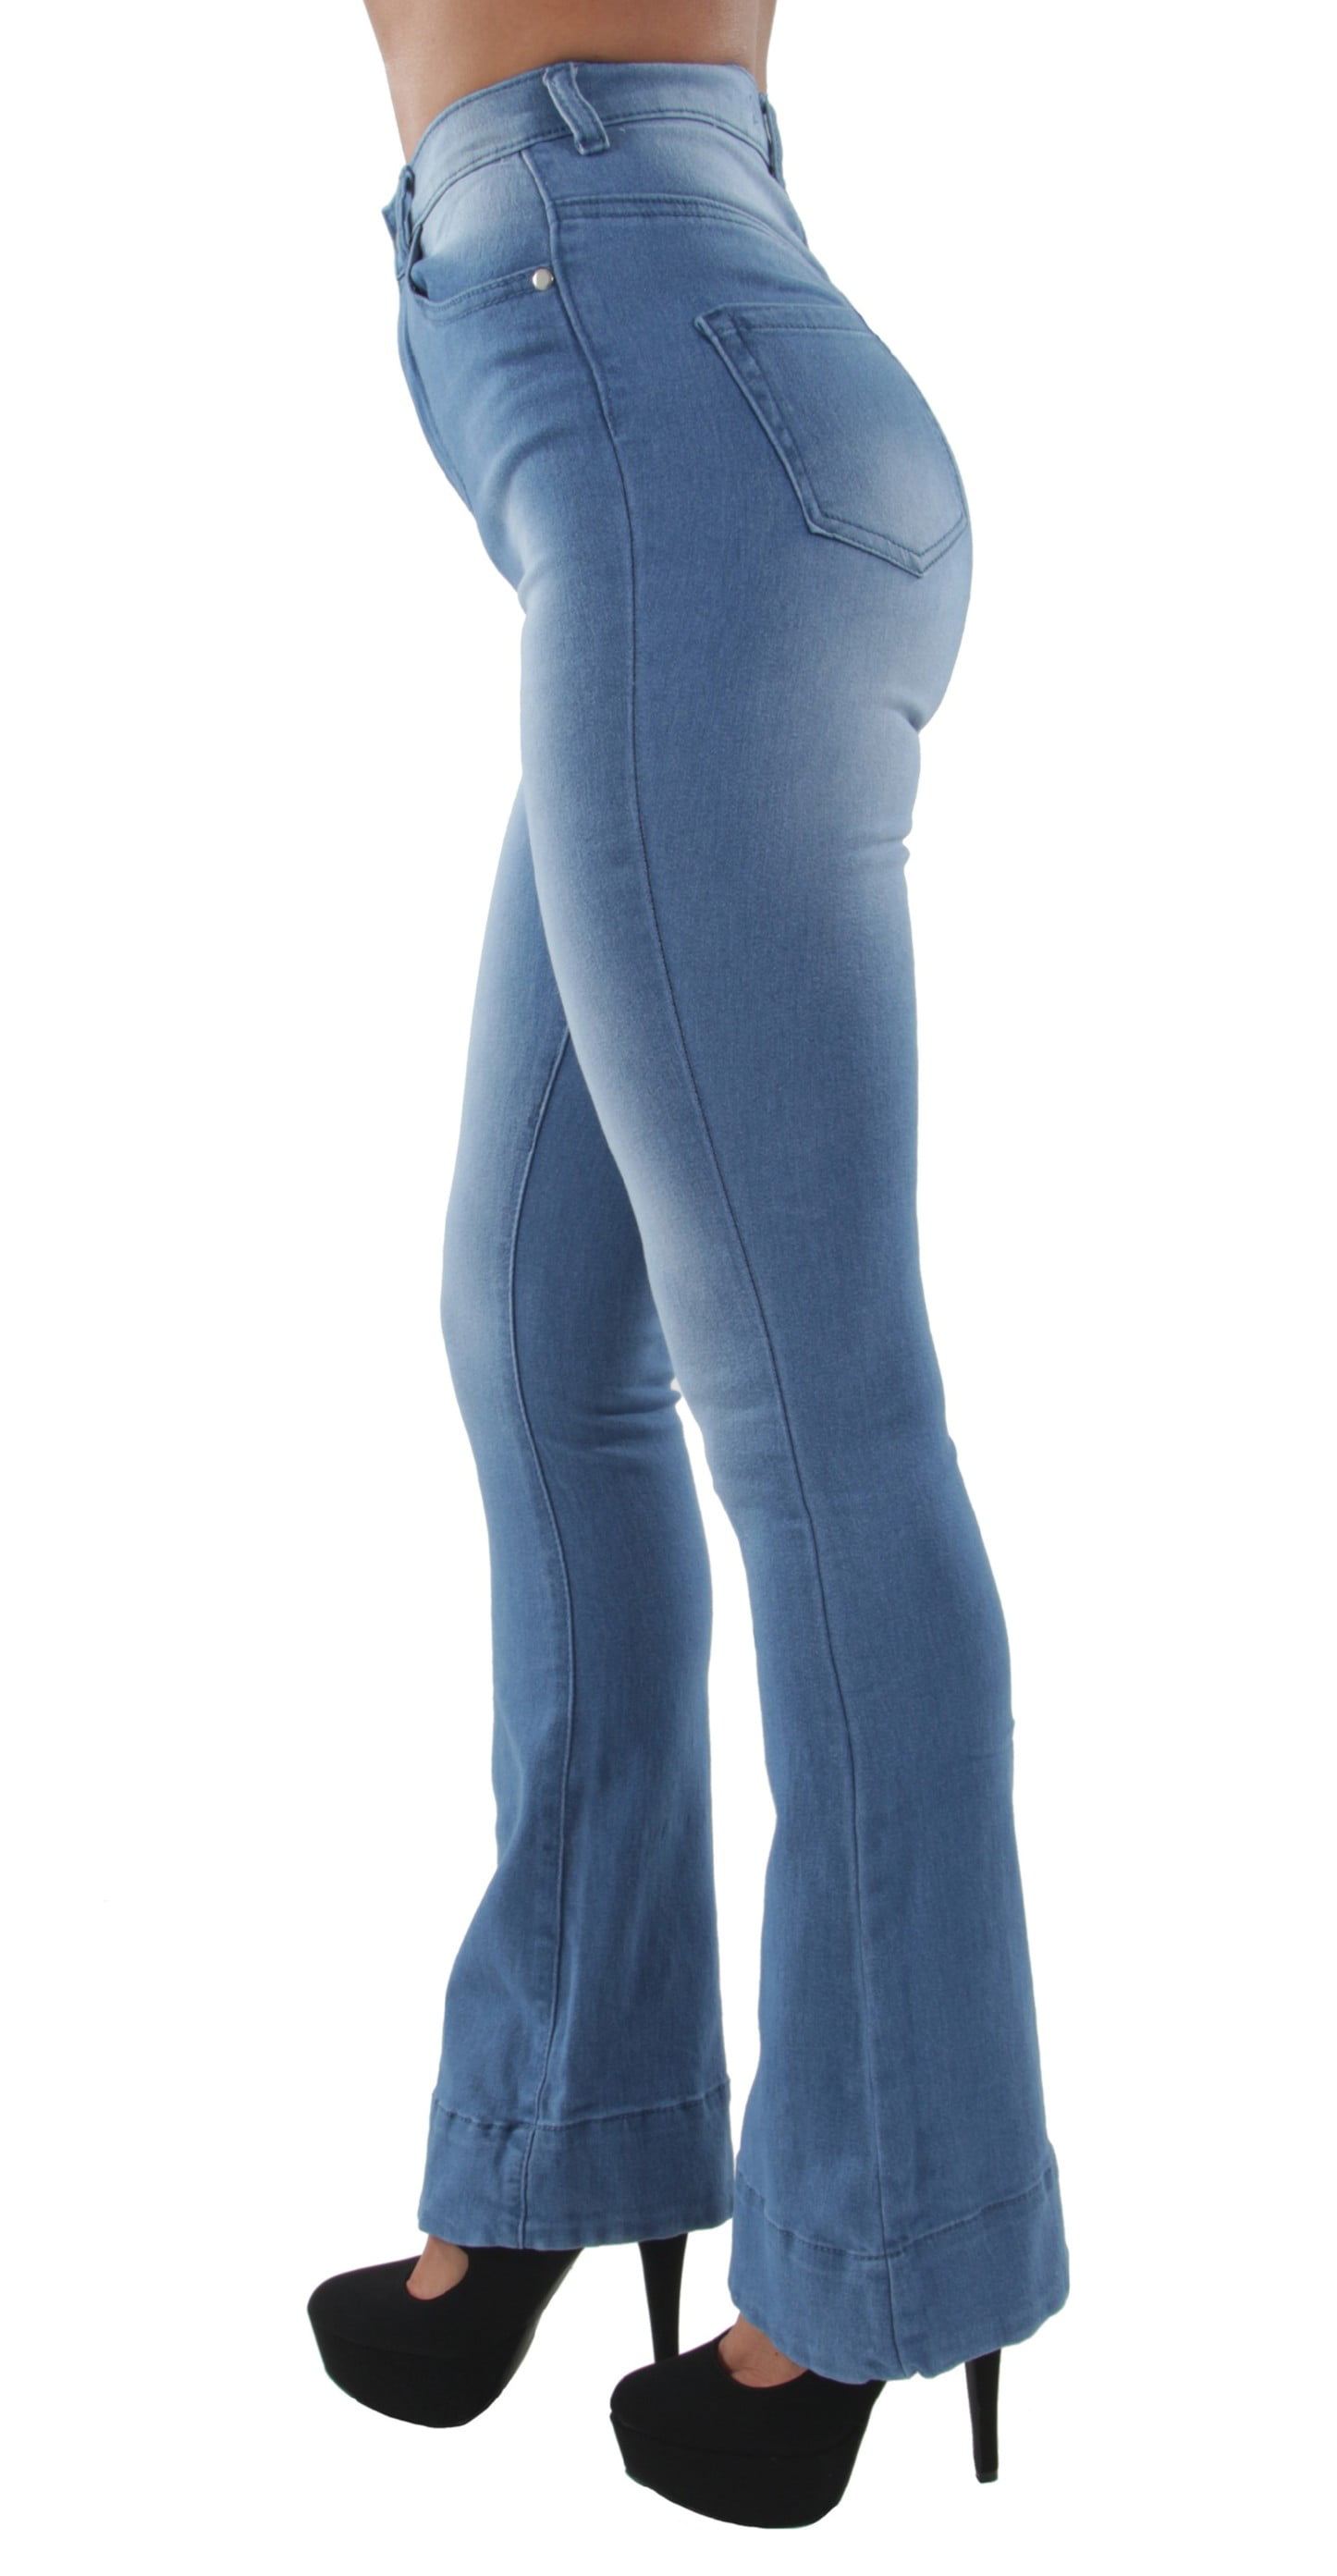 WUAI-Women Bell Bottoms Jeans Classic High Waist Bootcut Flared Denim Pants Plus Size